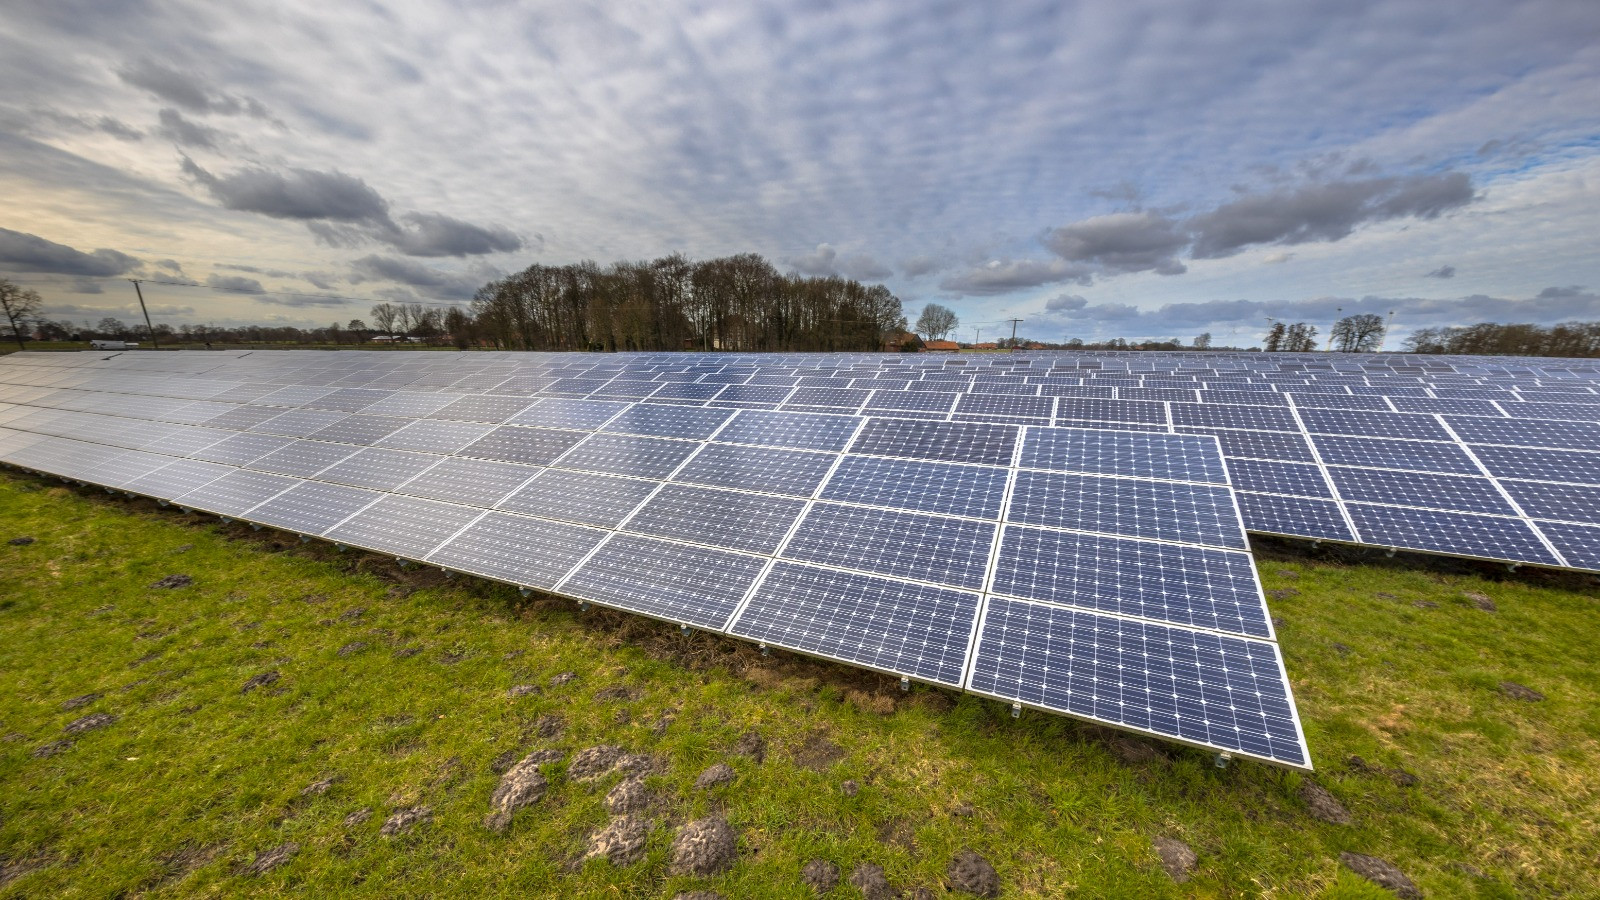 Instalação de energia solar no solo: quais cuidados devo ter com o terreno? - Ecosol